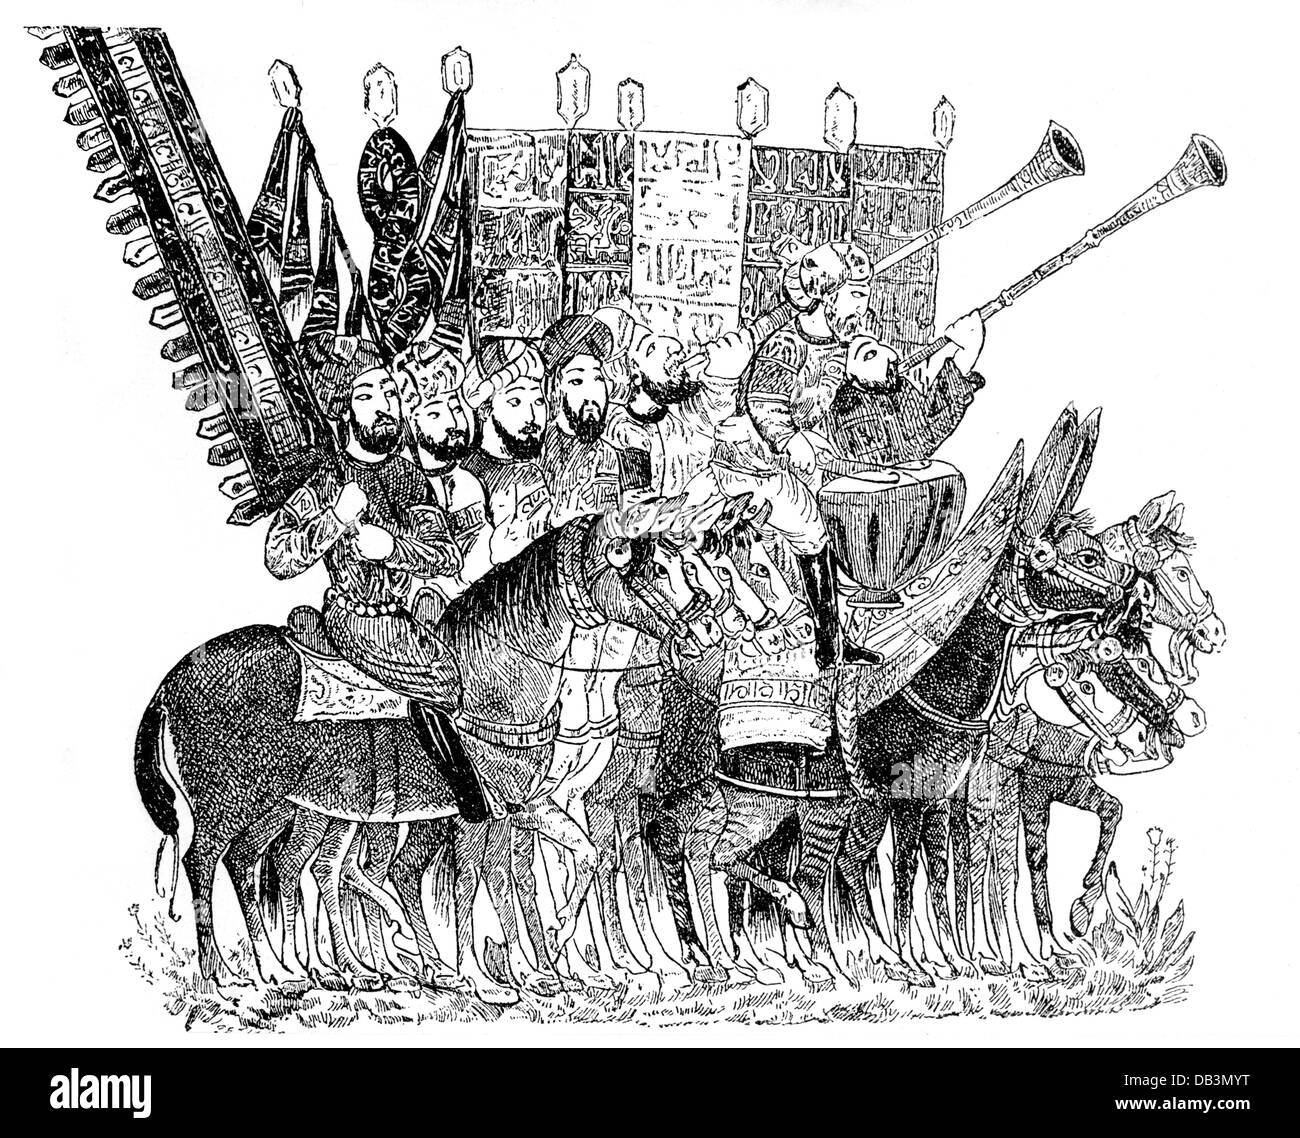 Militaire, Moyen Age, porteur arabe et musiciens, gravure en bois, avant 1896, droits additionnels-Clearences-non disponible Banque D'Images